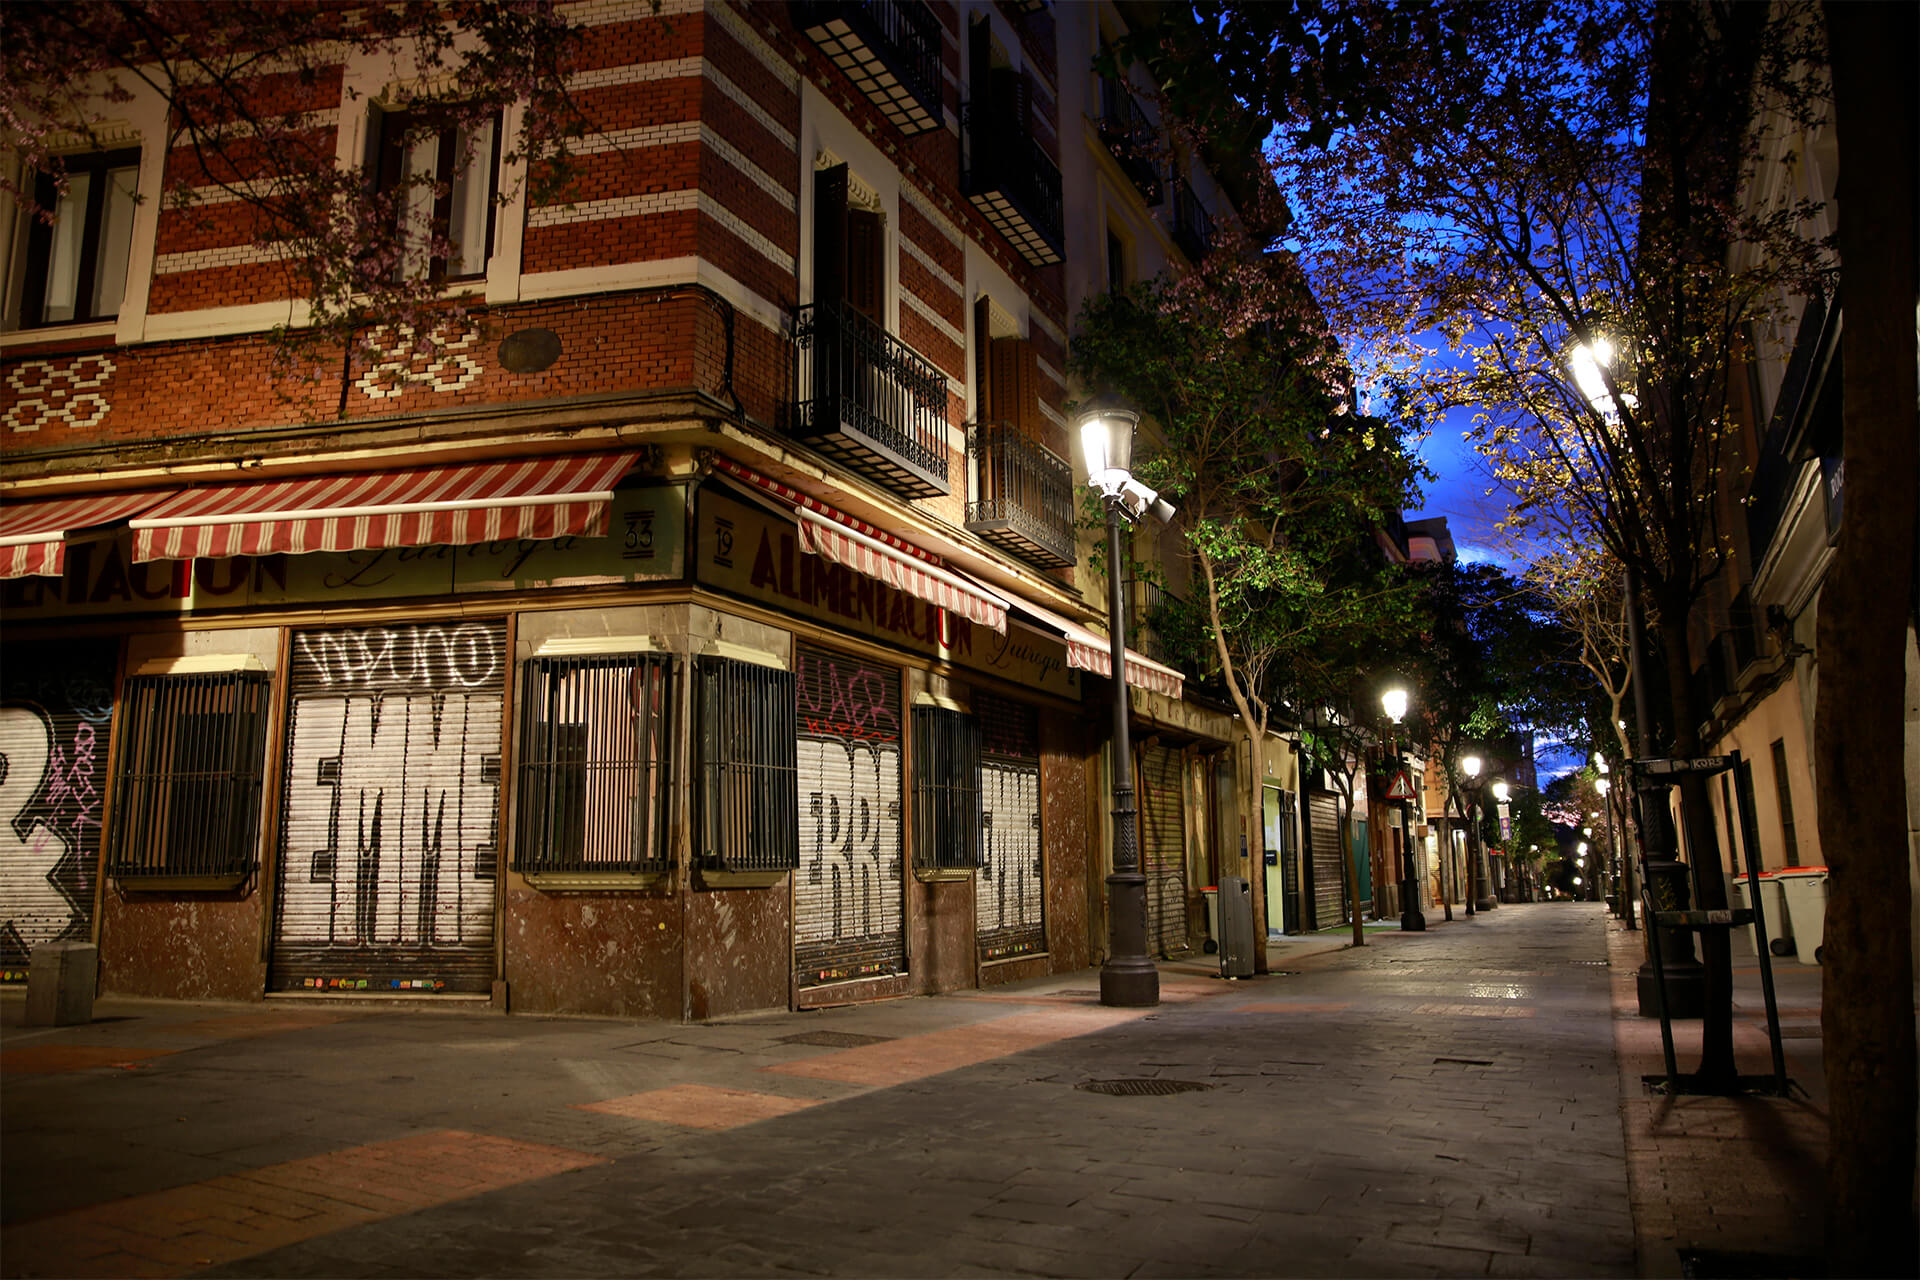 Calle de las Huertas, assez calme le jour et animée la nuit, est une rue assez connue pour ses petits théâtres, bars à tapas et restaurants.